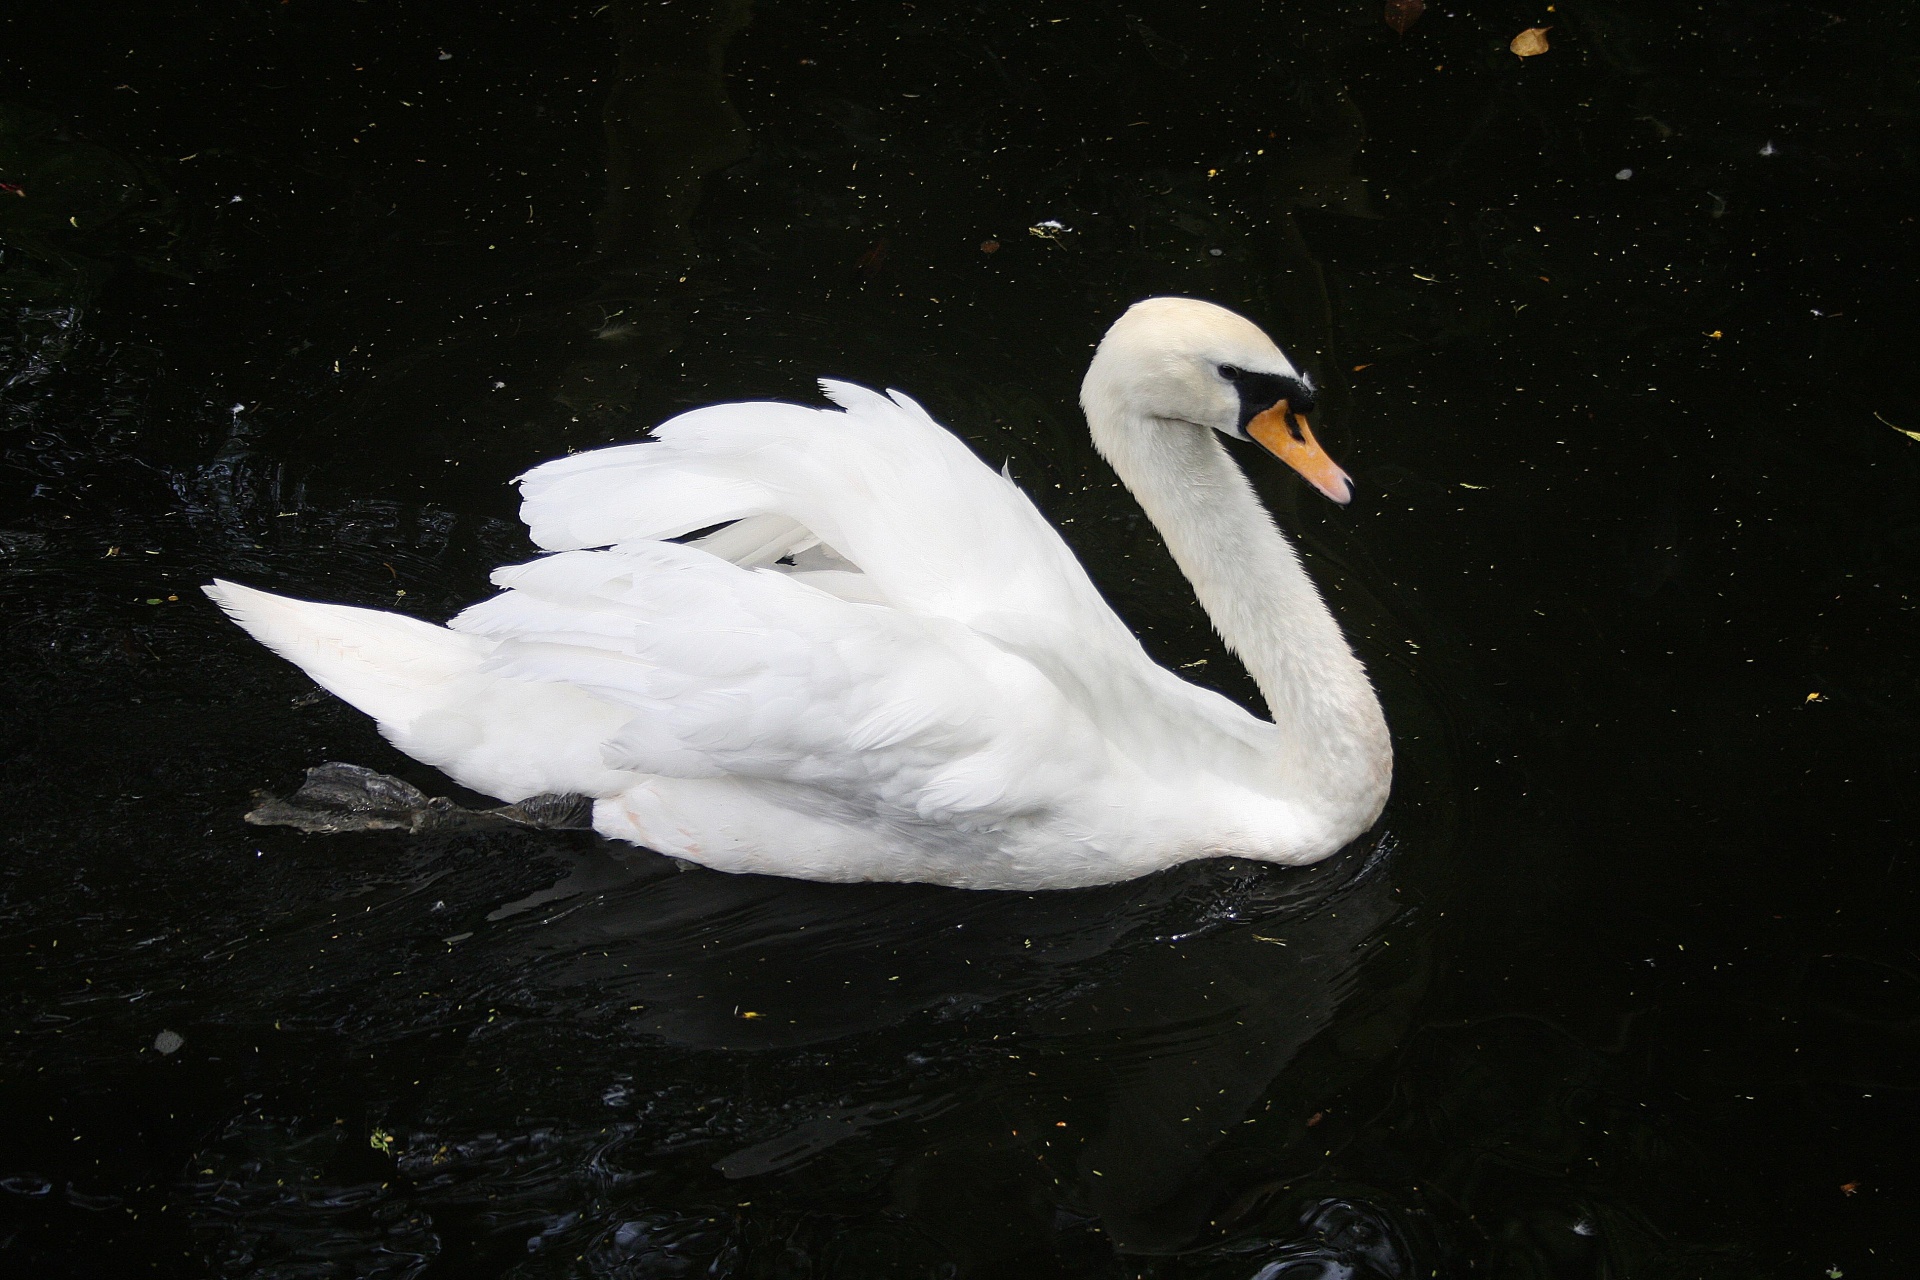 Cisne blanco imponente